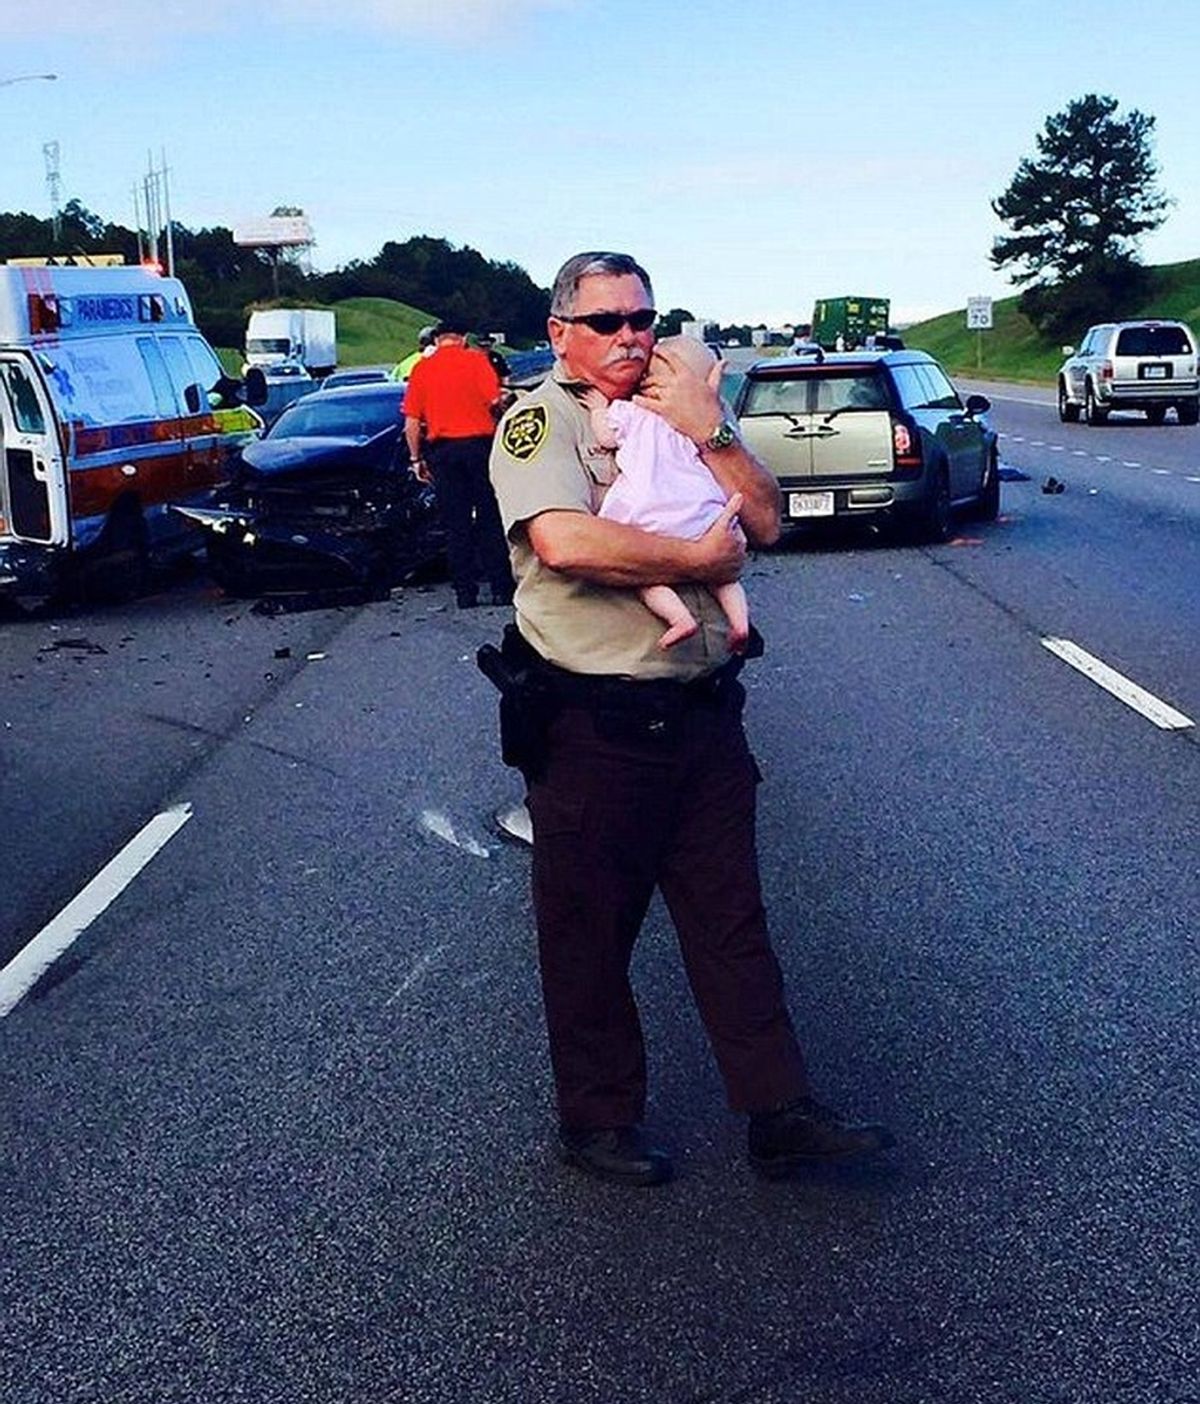 El policía que consuela a un bebé tras un accidente de tráfico, se vuelve viral